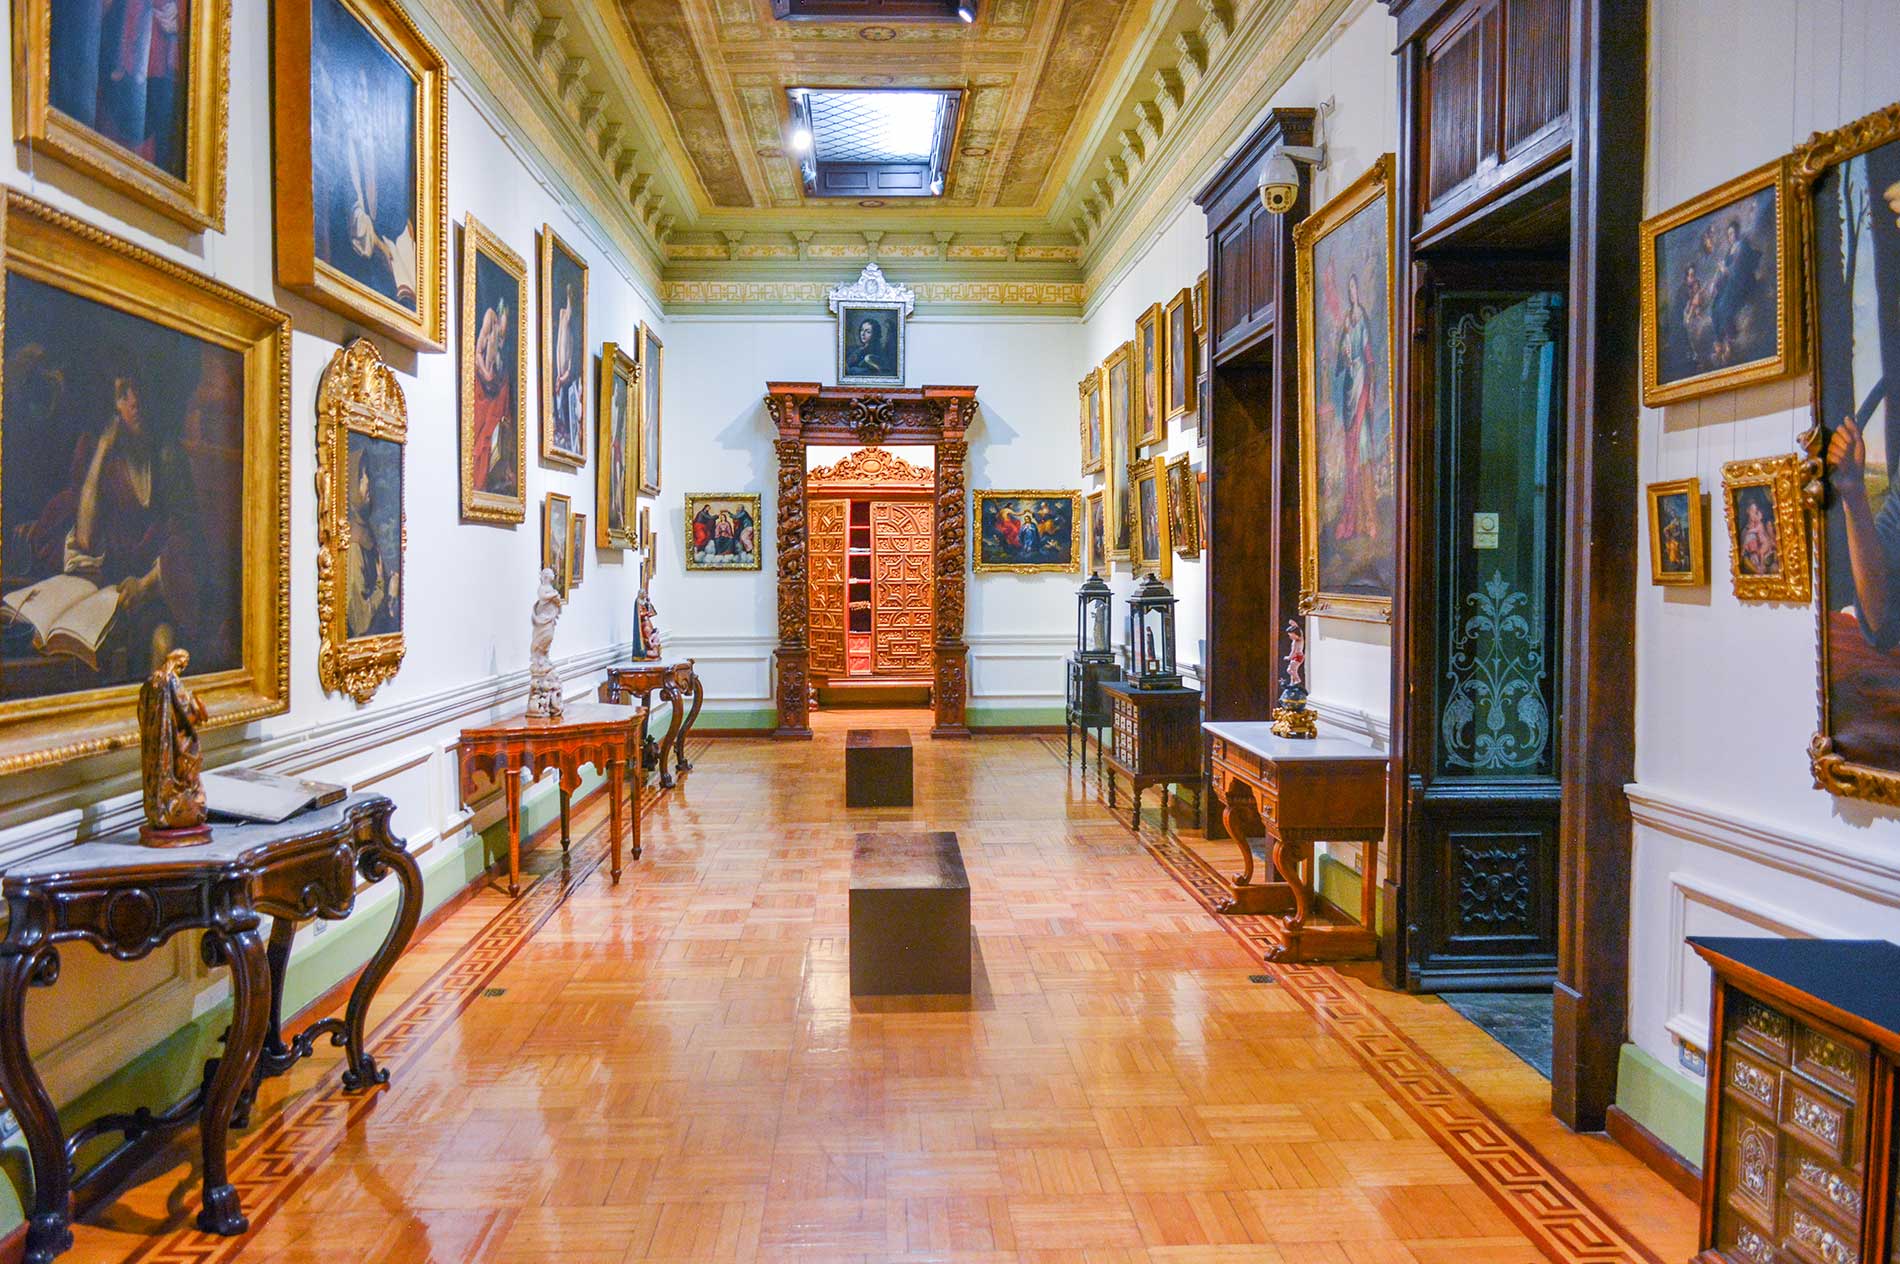 José Luis Bello y González Museum